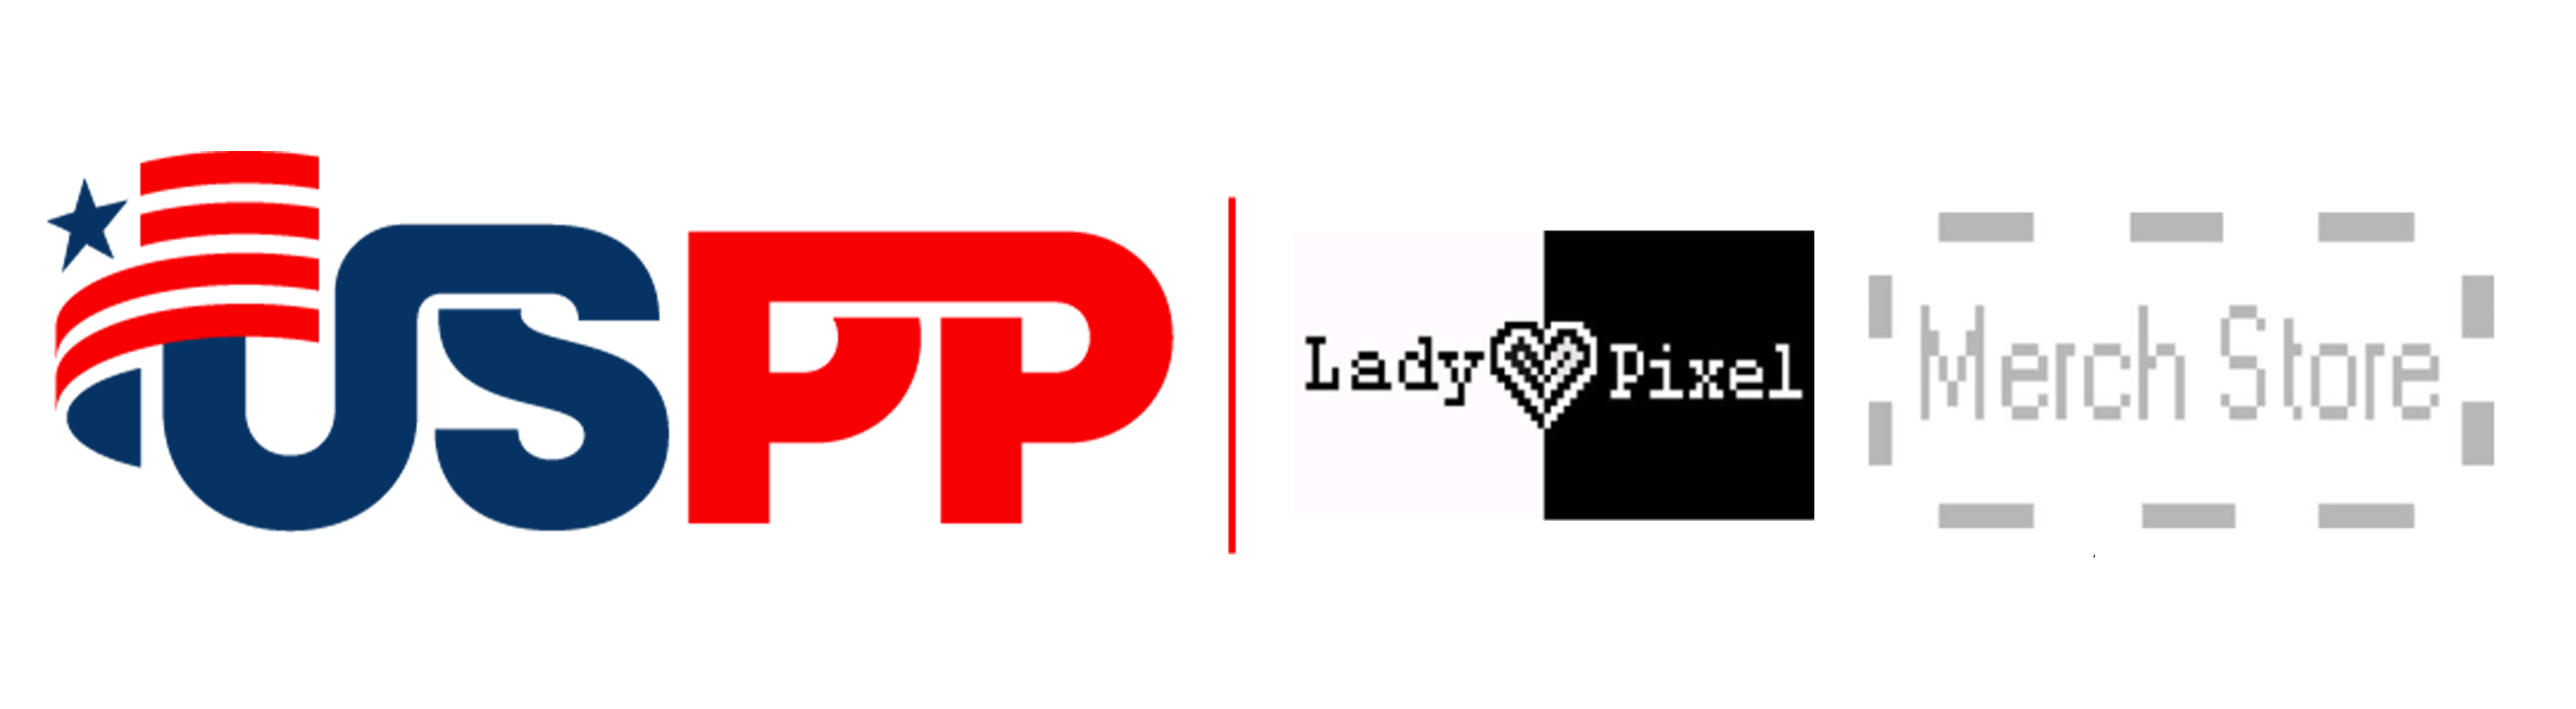 Lady Pixel Merch Store